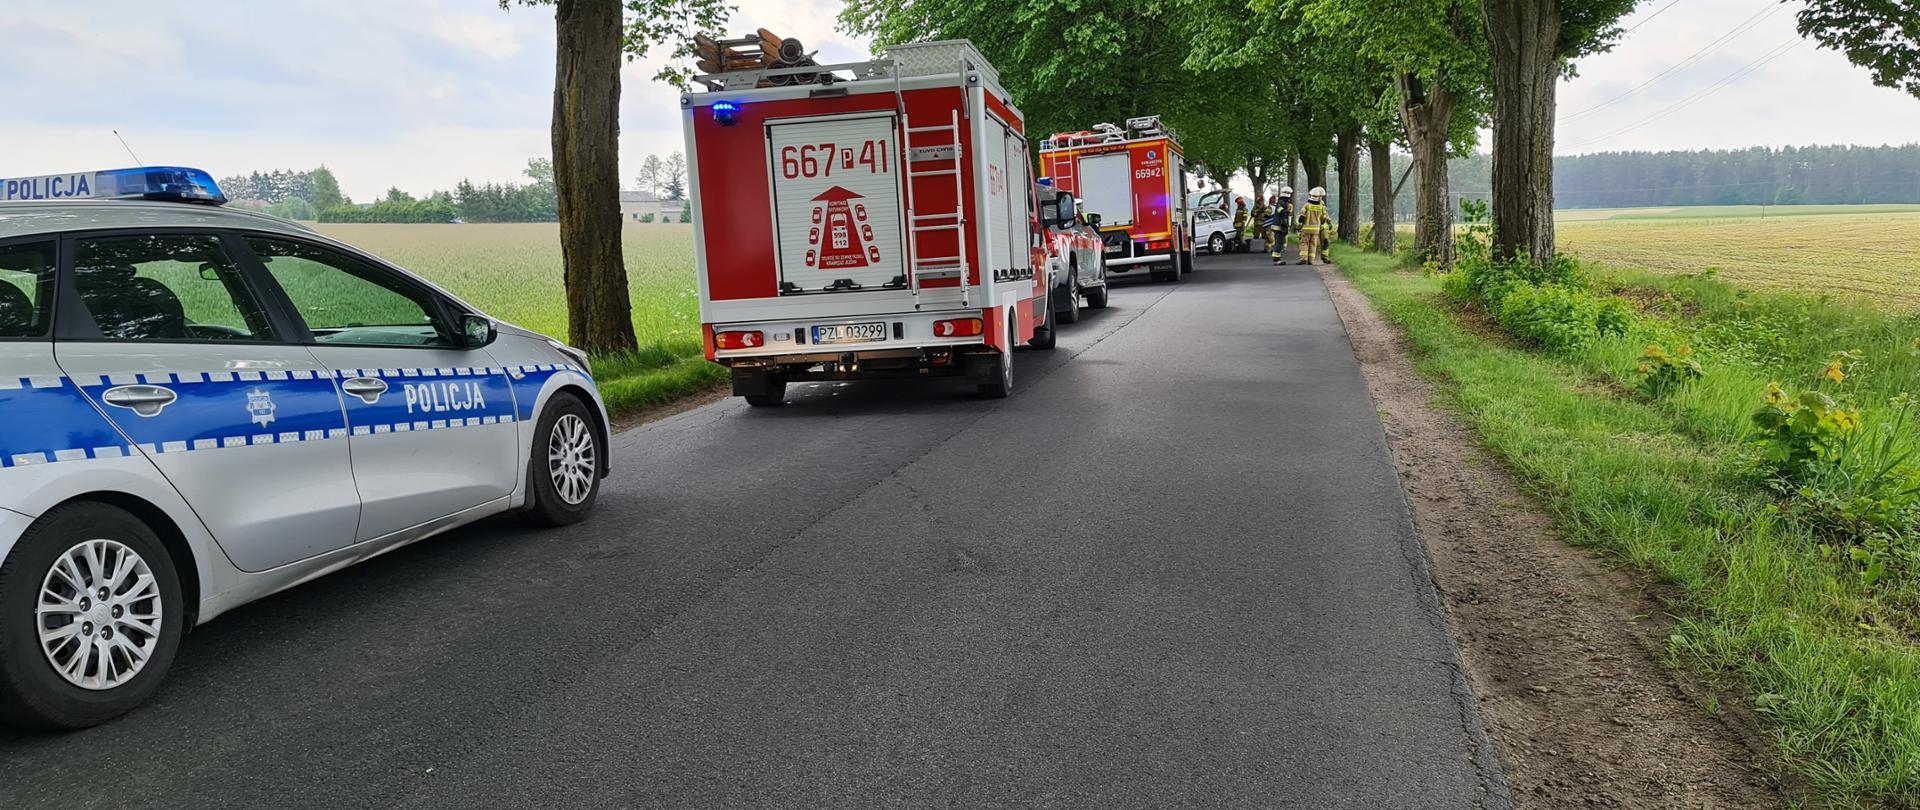 Na Zdjęciu widoczne są samochody strażackie drzewa samochód policji droga asfaltowa strażacy przy samochodzie.